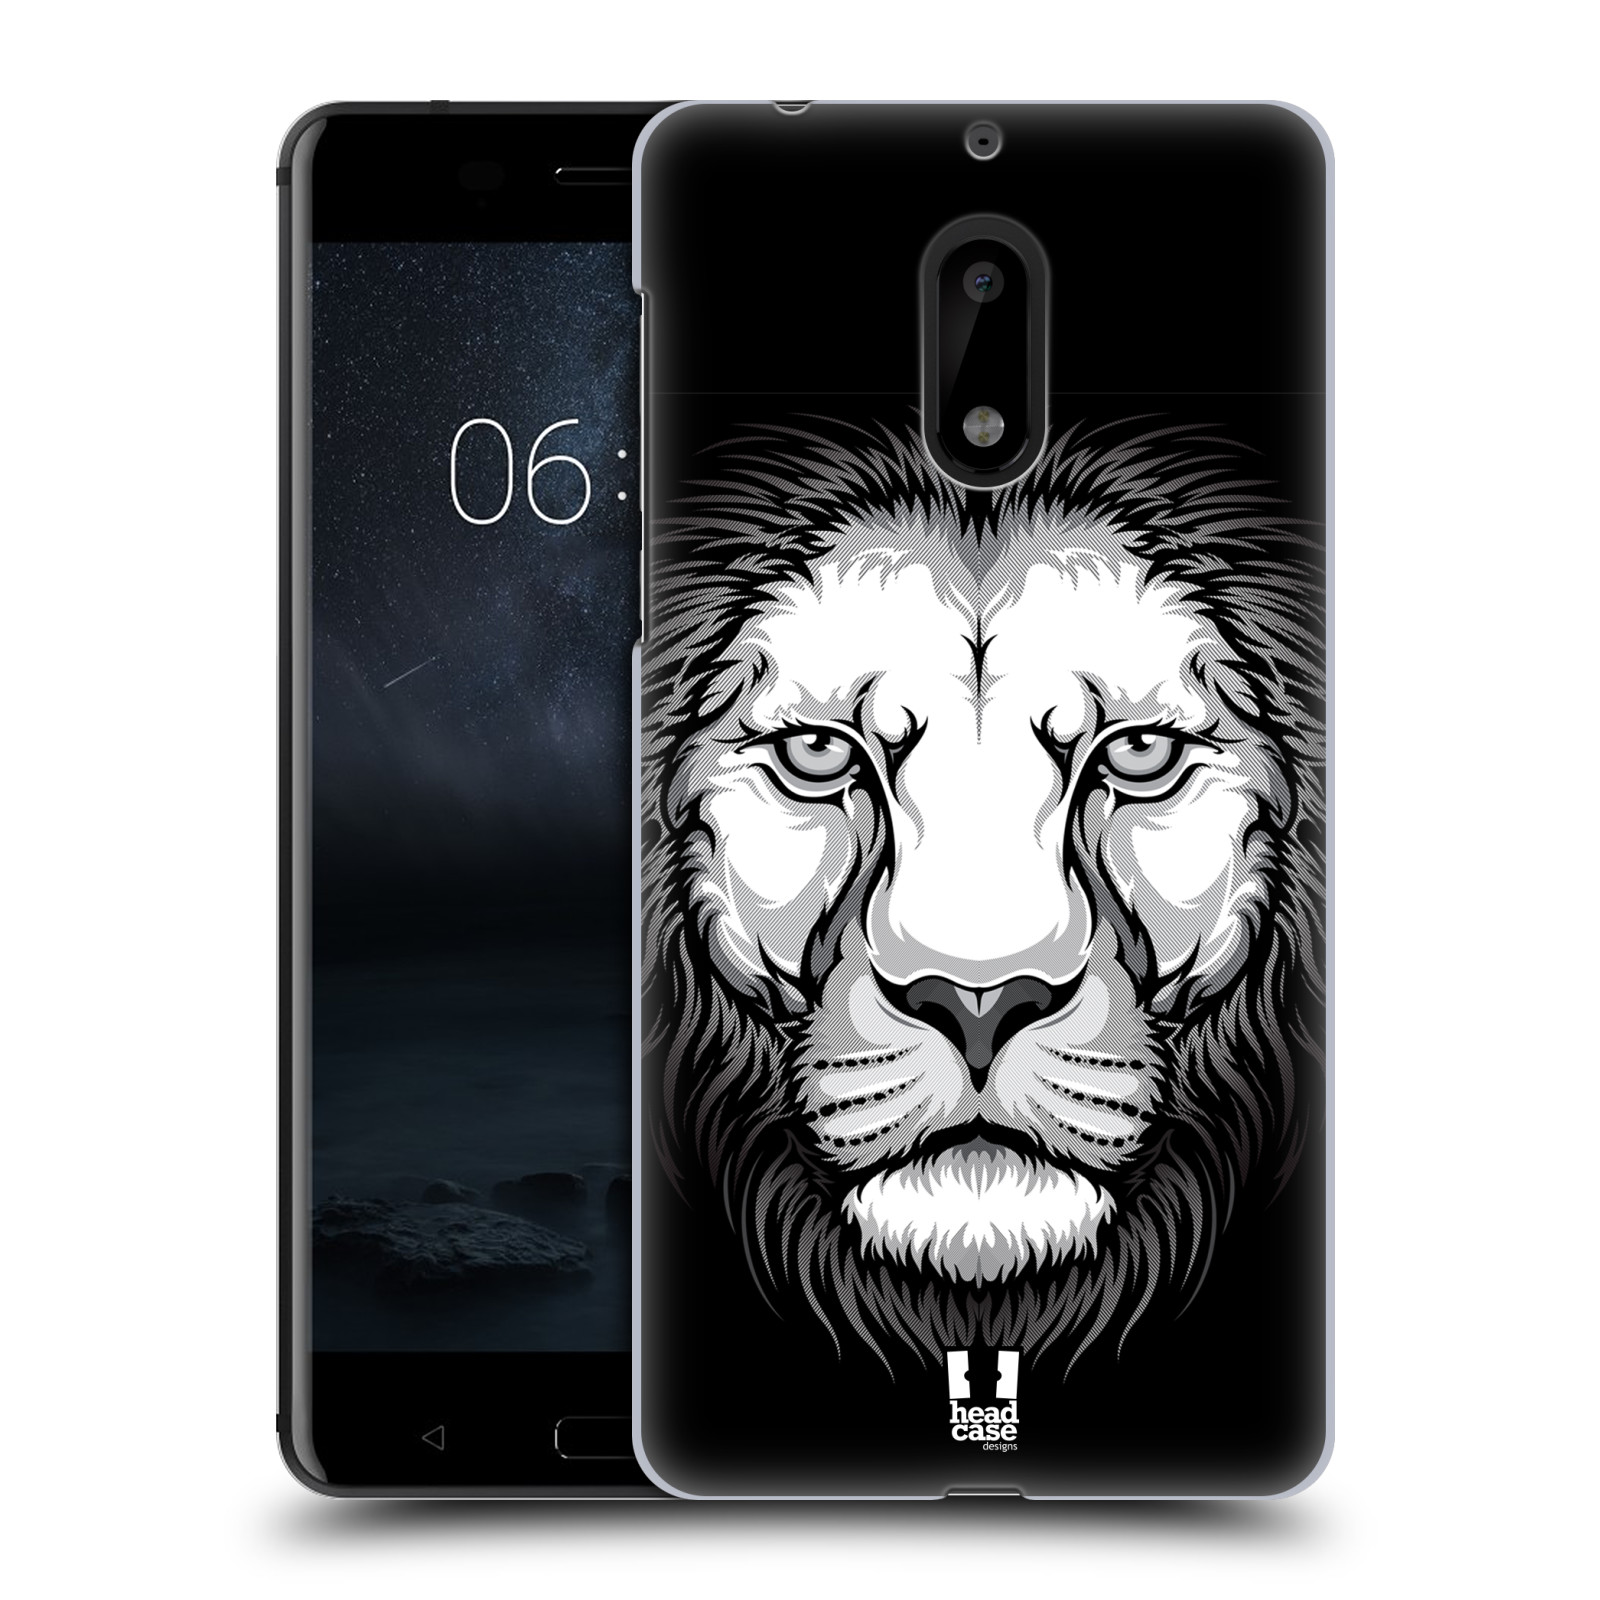 HEAD CASE plastový obal na mobil Nokia 6 vzor Zvíře kreslená tvář lev